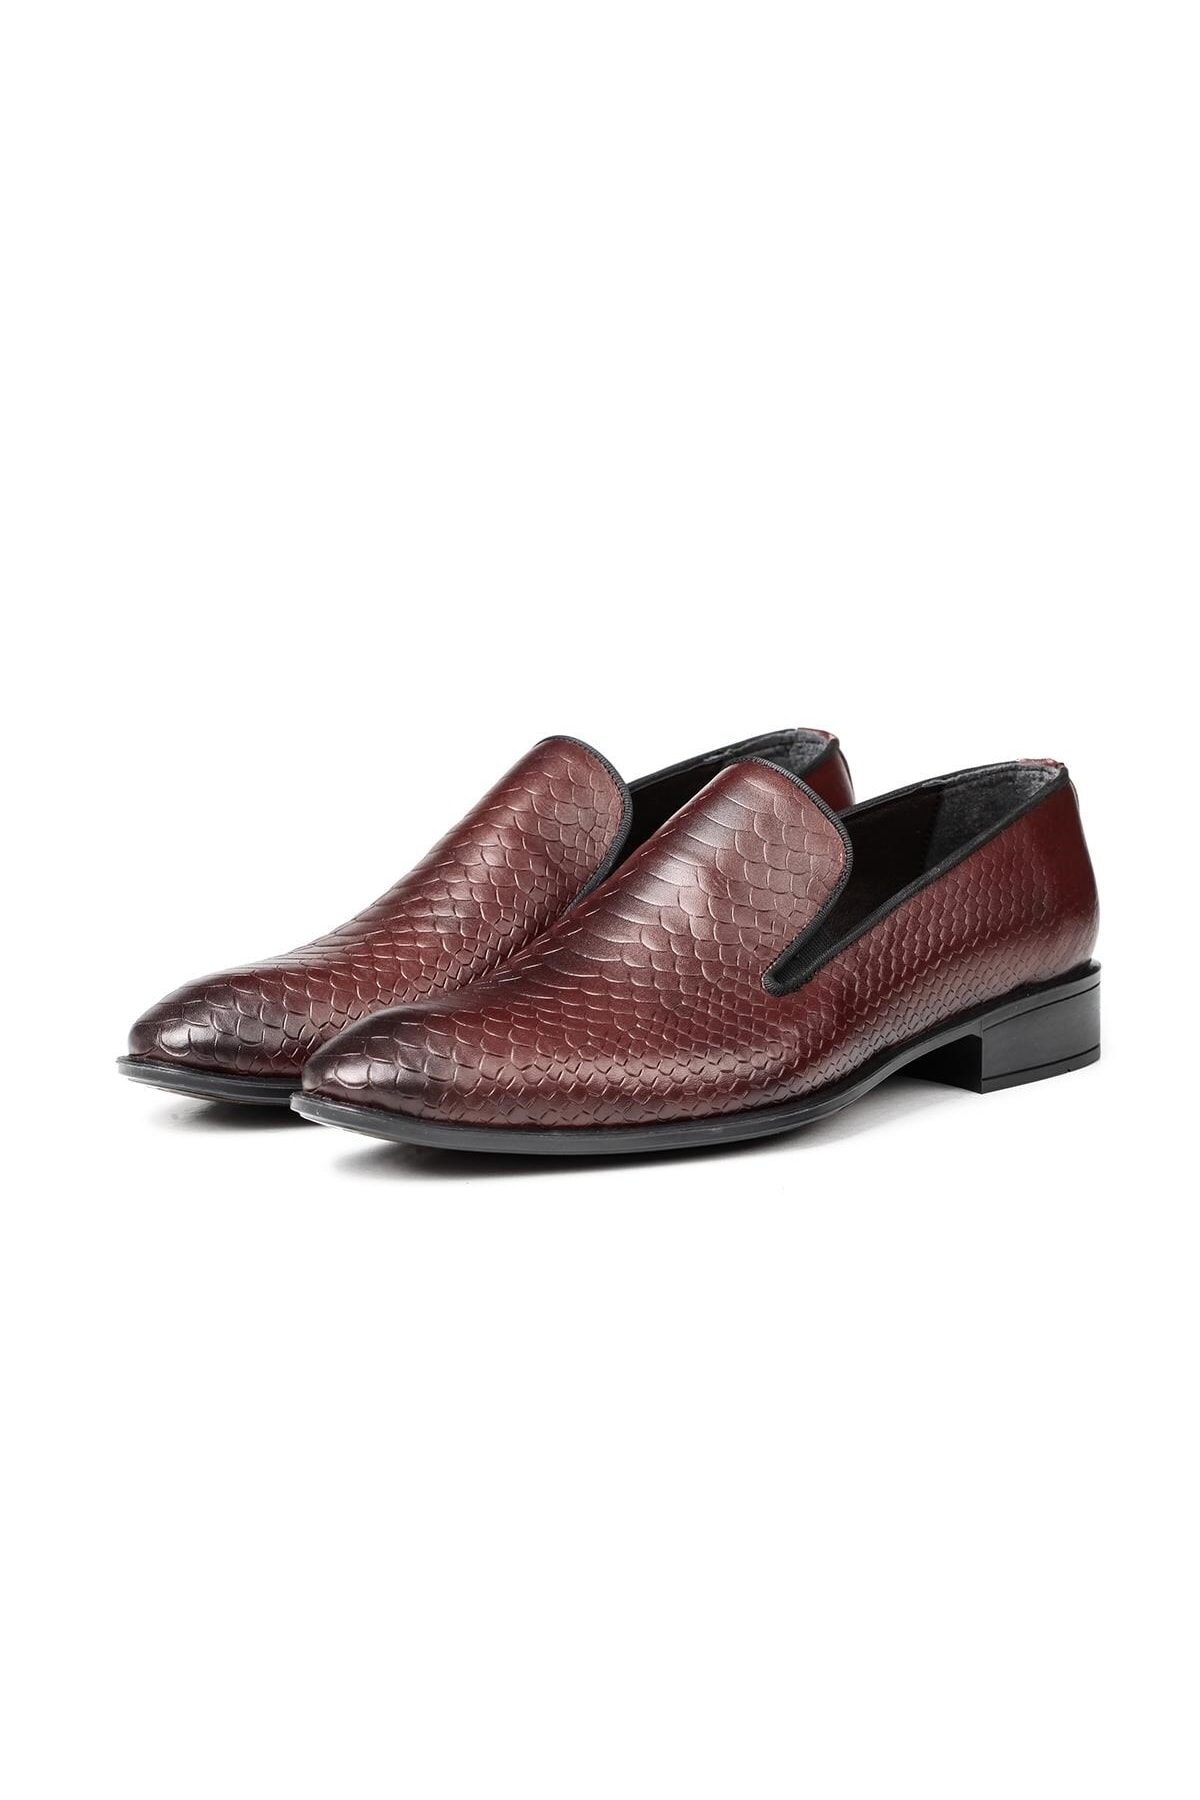 Ducavelli Alligator Genuine Leather Men's Classic Shoes, Loafers Classic Shoes, Loafers.